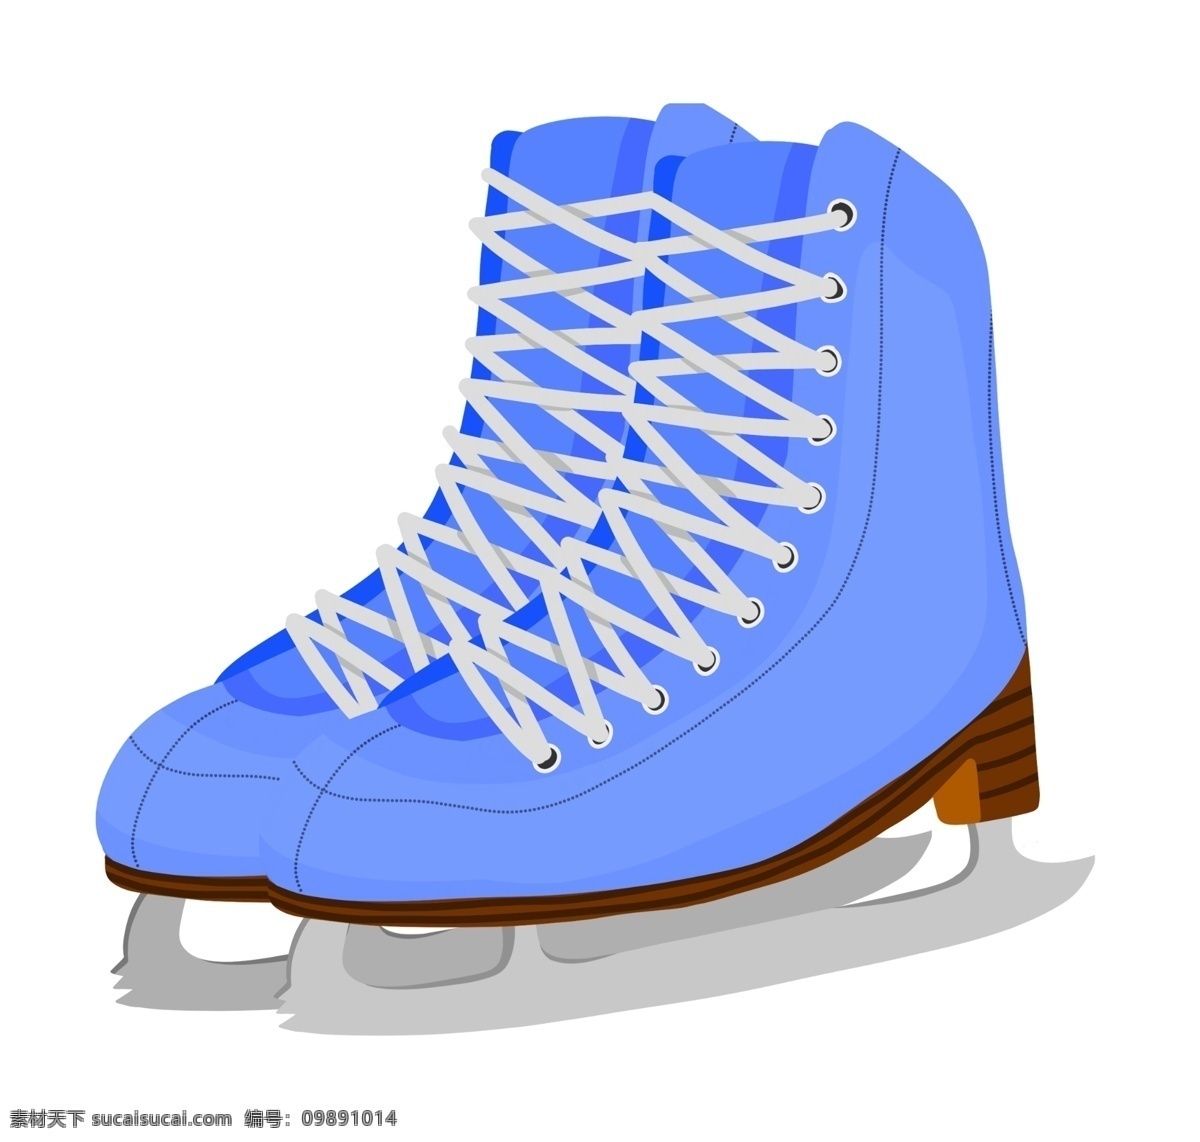 手绘 蓝色 溜冰鞋 插画 手绘溜冰鞋 蓝色溜冰鞋 鞋子 户外运动 运动 工具 溜冰鞋插画